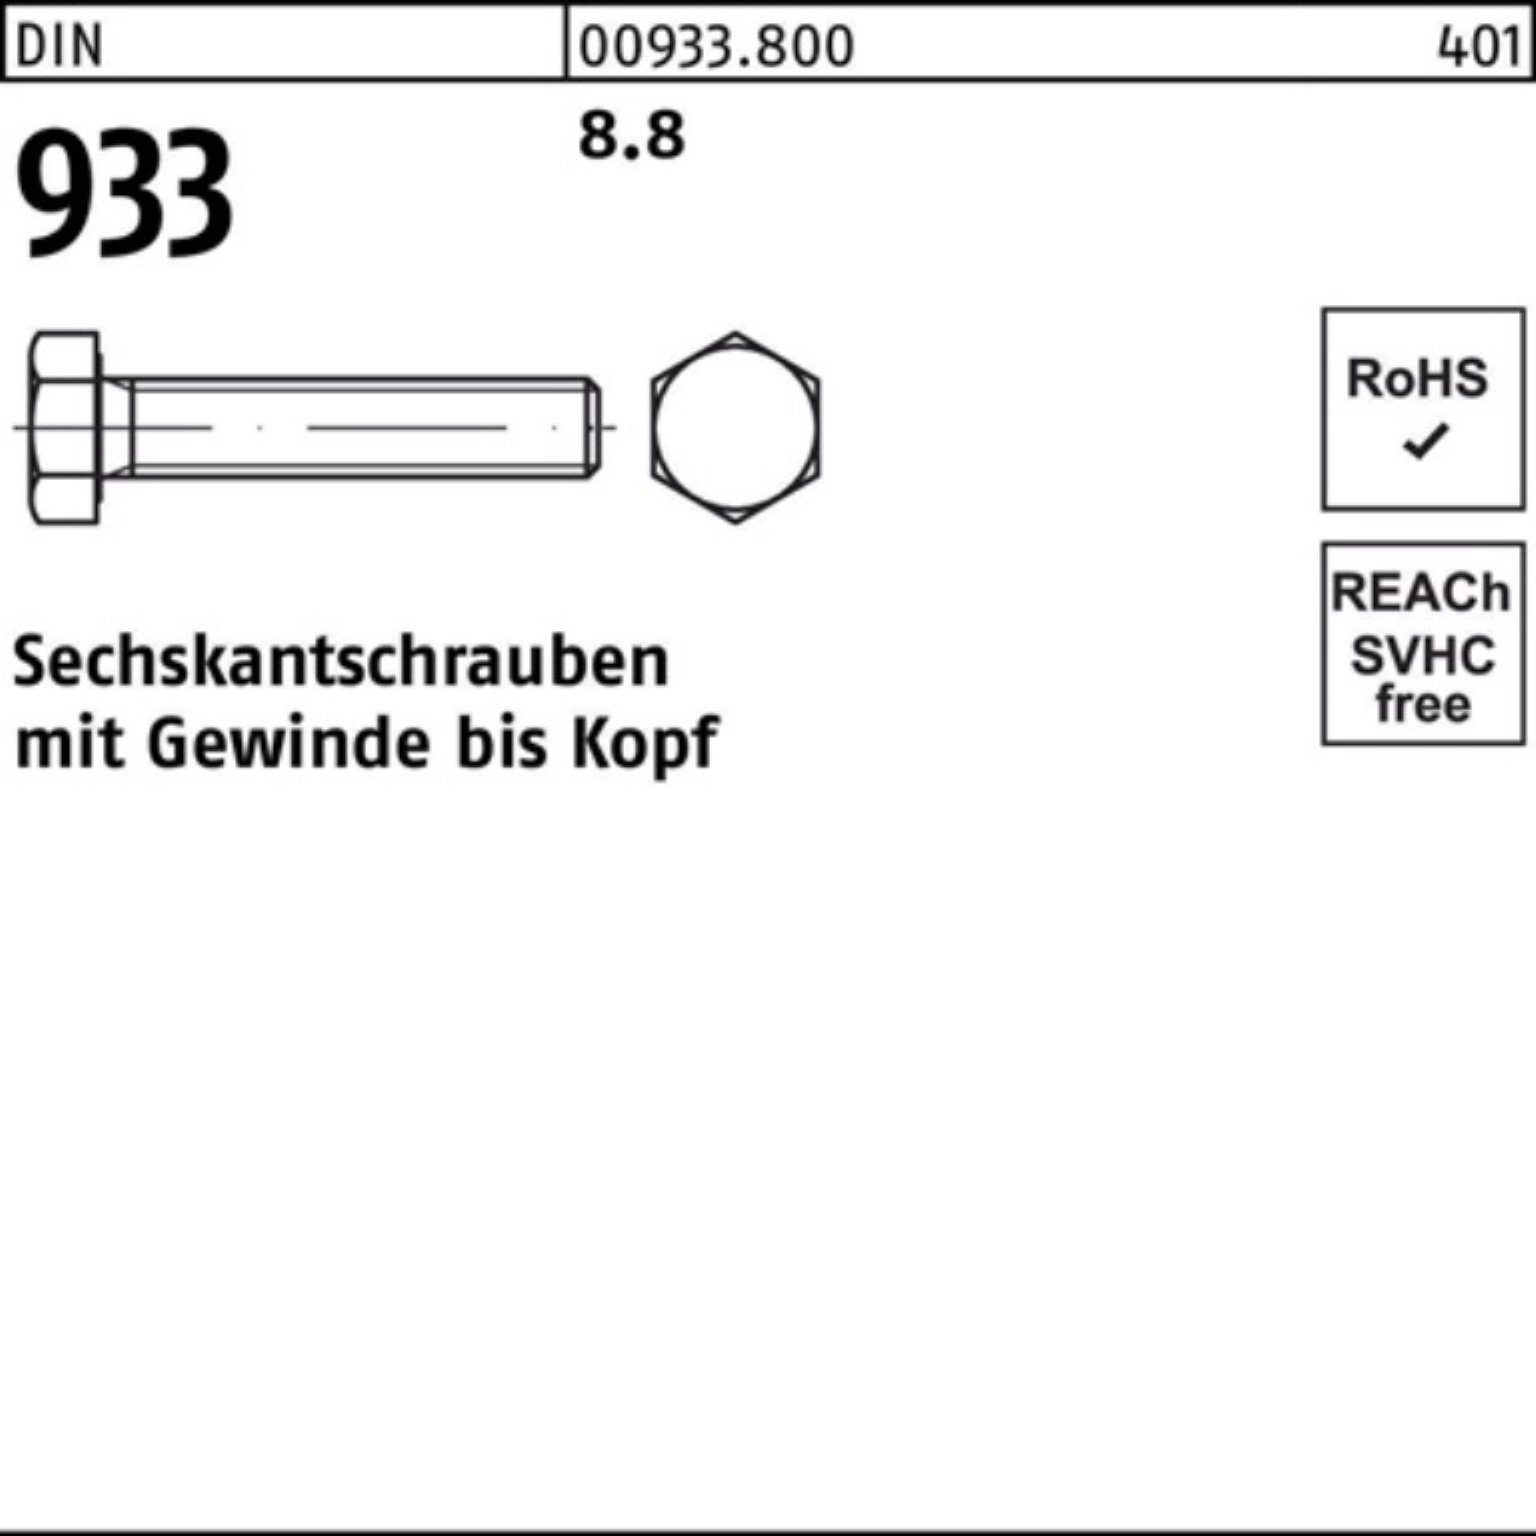 Pack Stück 1 DIN Reyher 100er M16x Sechskantschraube 933 8.8 Sechskantschraube DIN VG 220 933